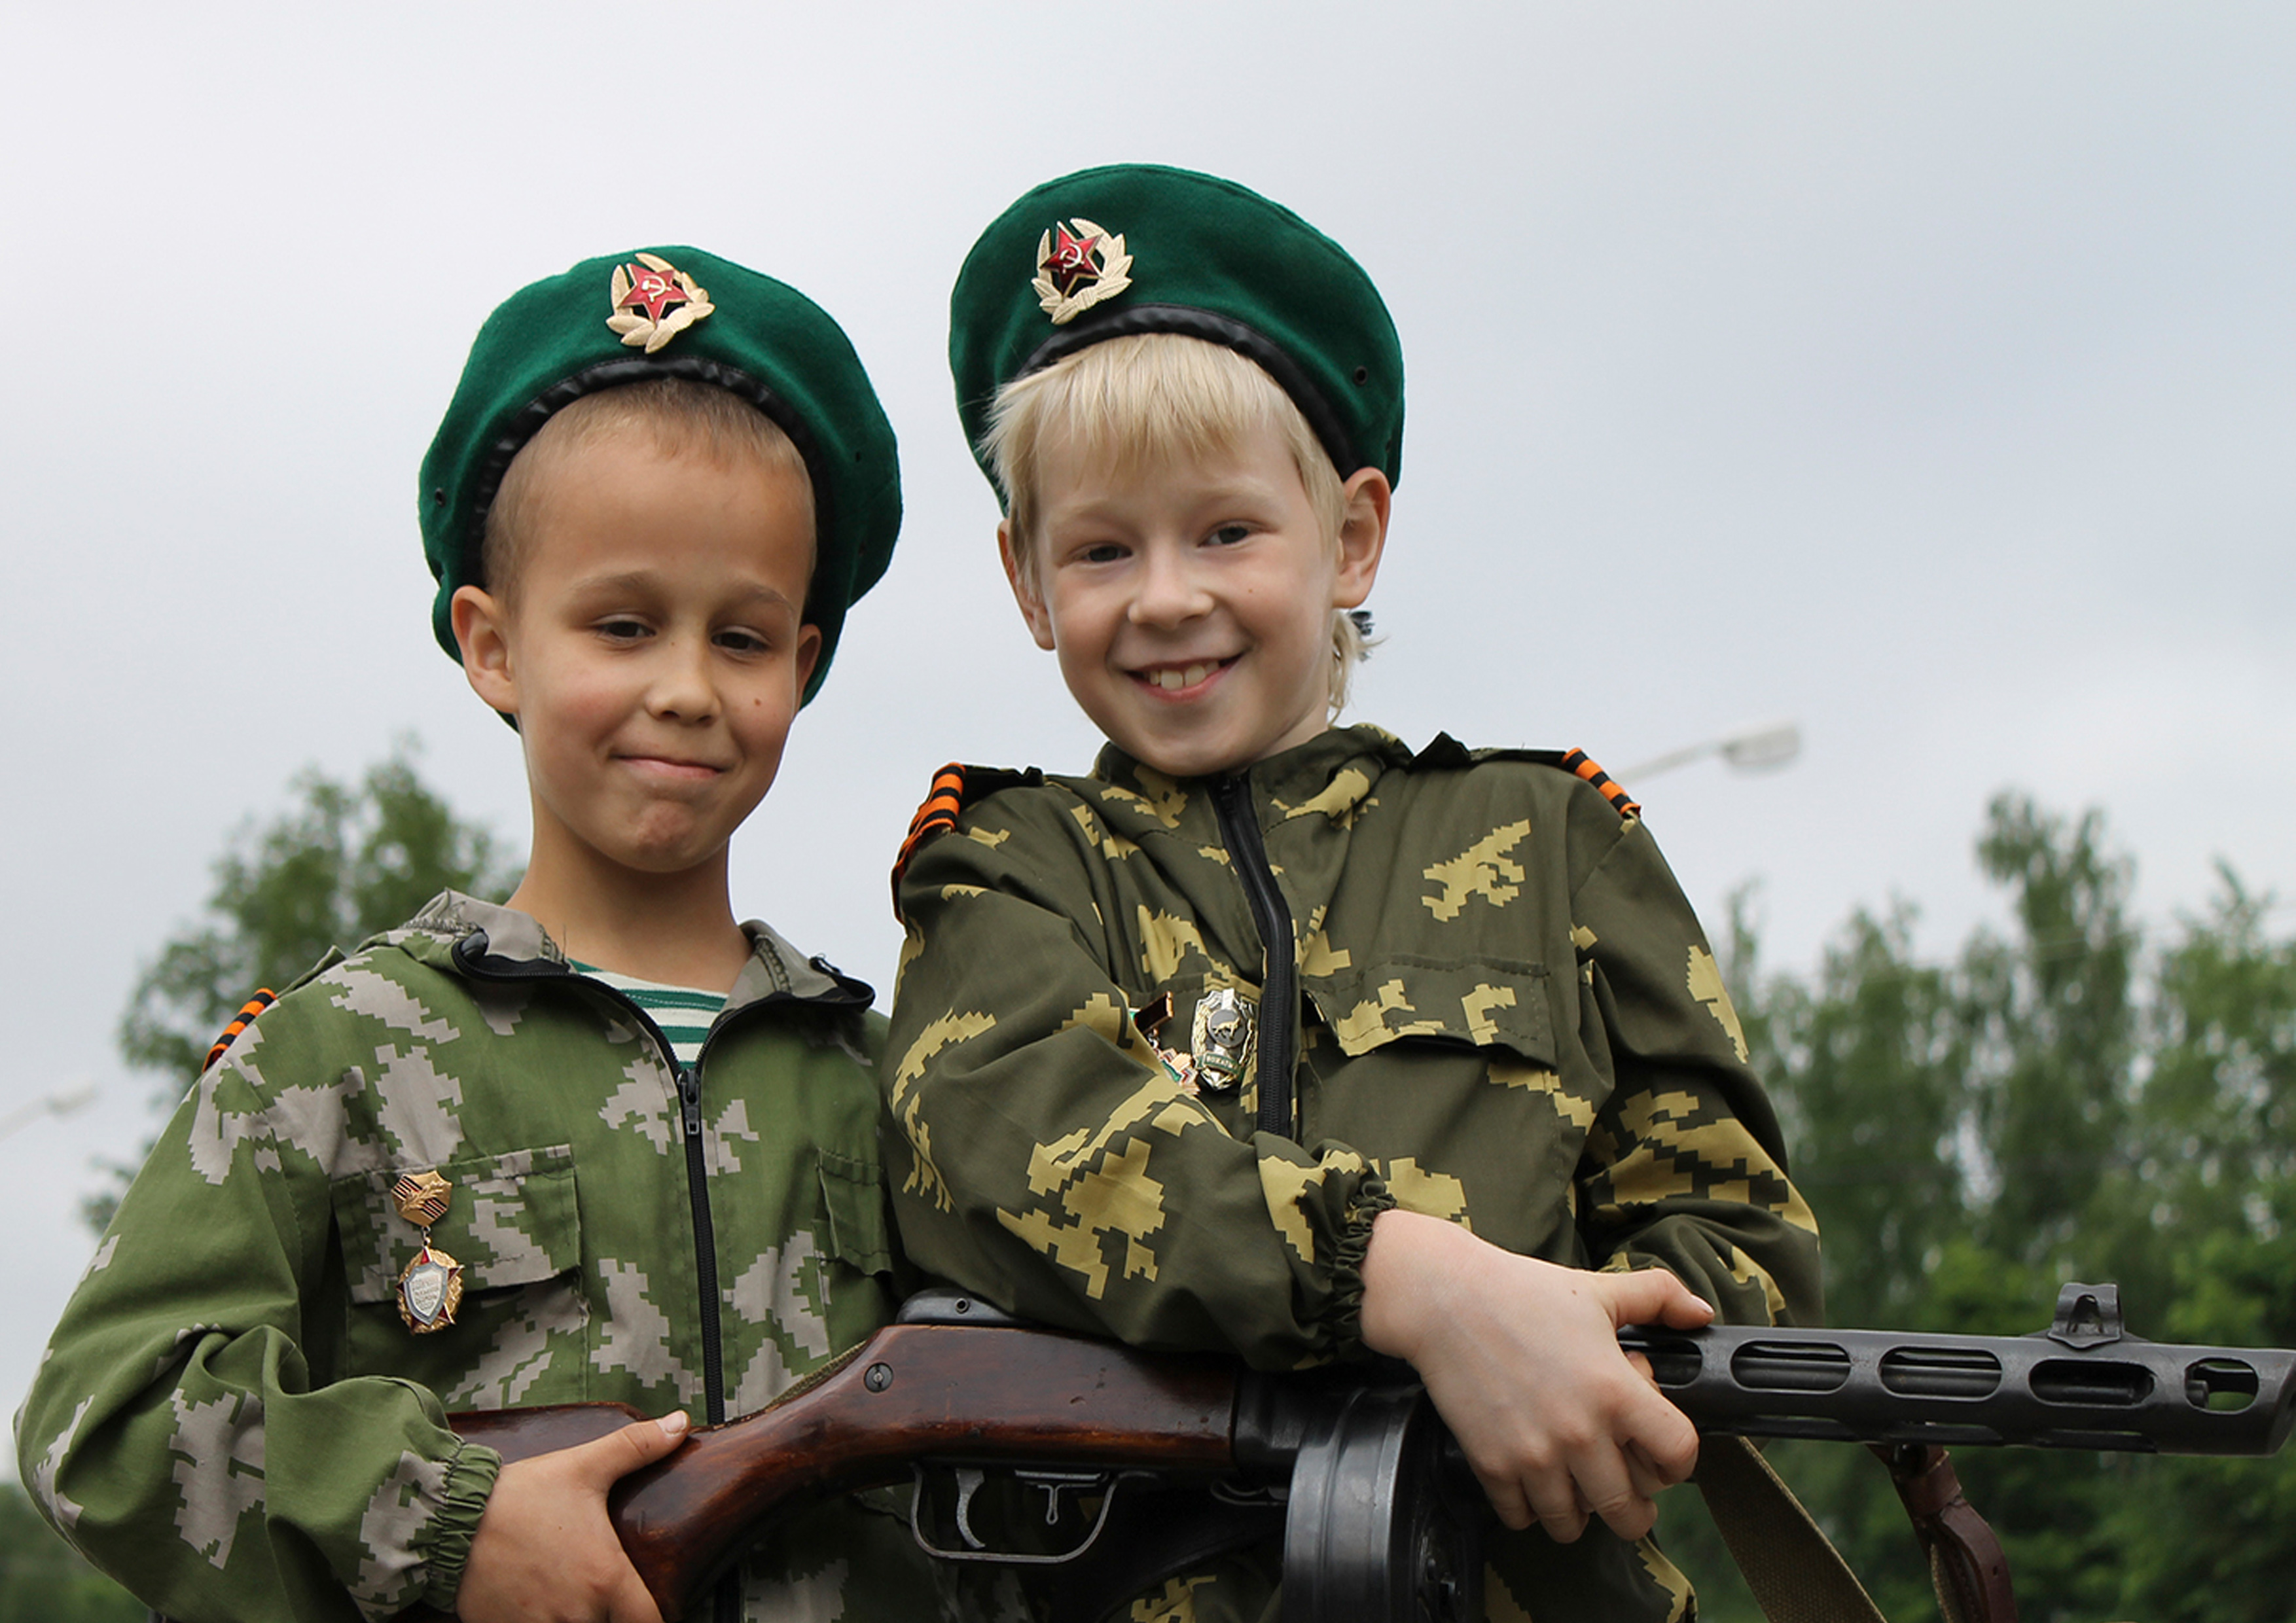 Фото на 23 февраля в школу. Дети в военной форме. Армия для детей. Защитники Отечества. Солдат с ребенком.